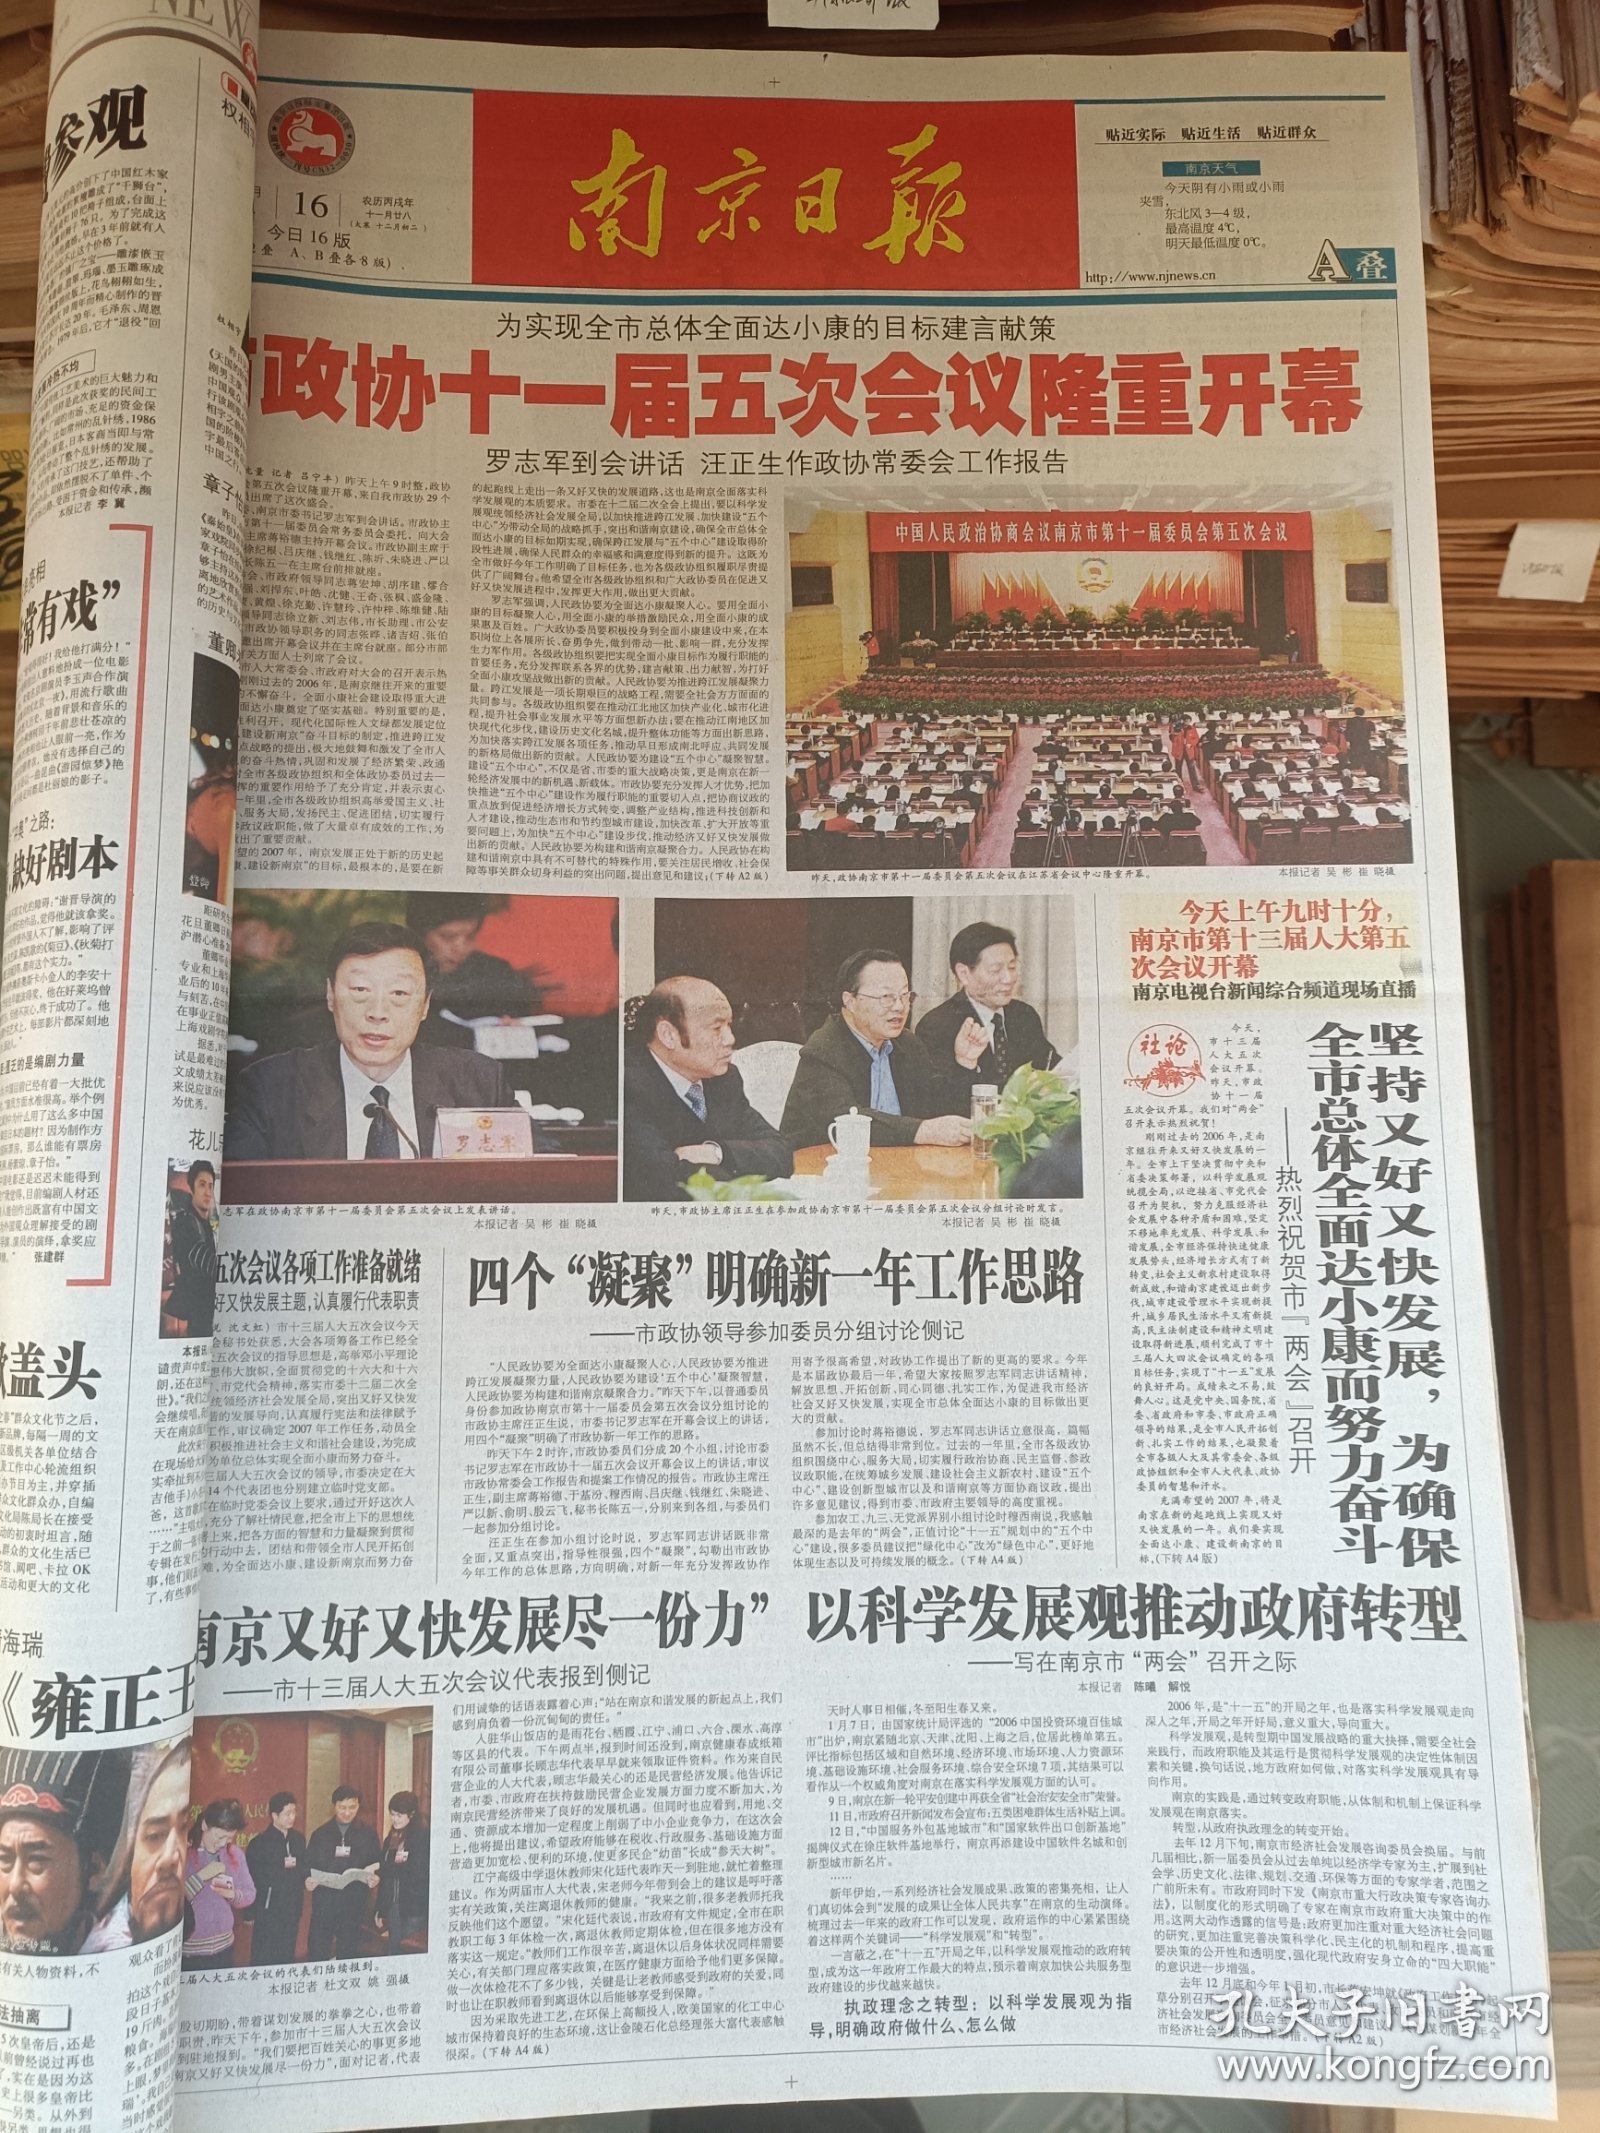 南京日报2007年1-3月合订本